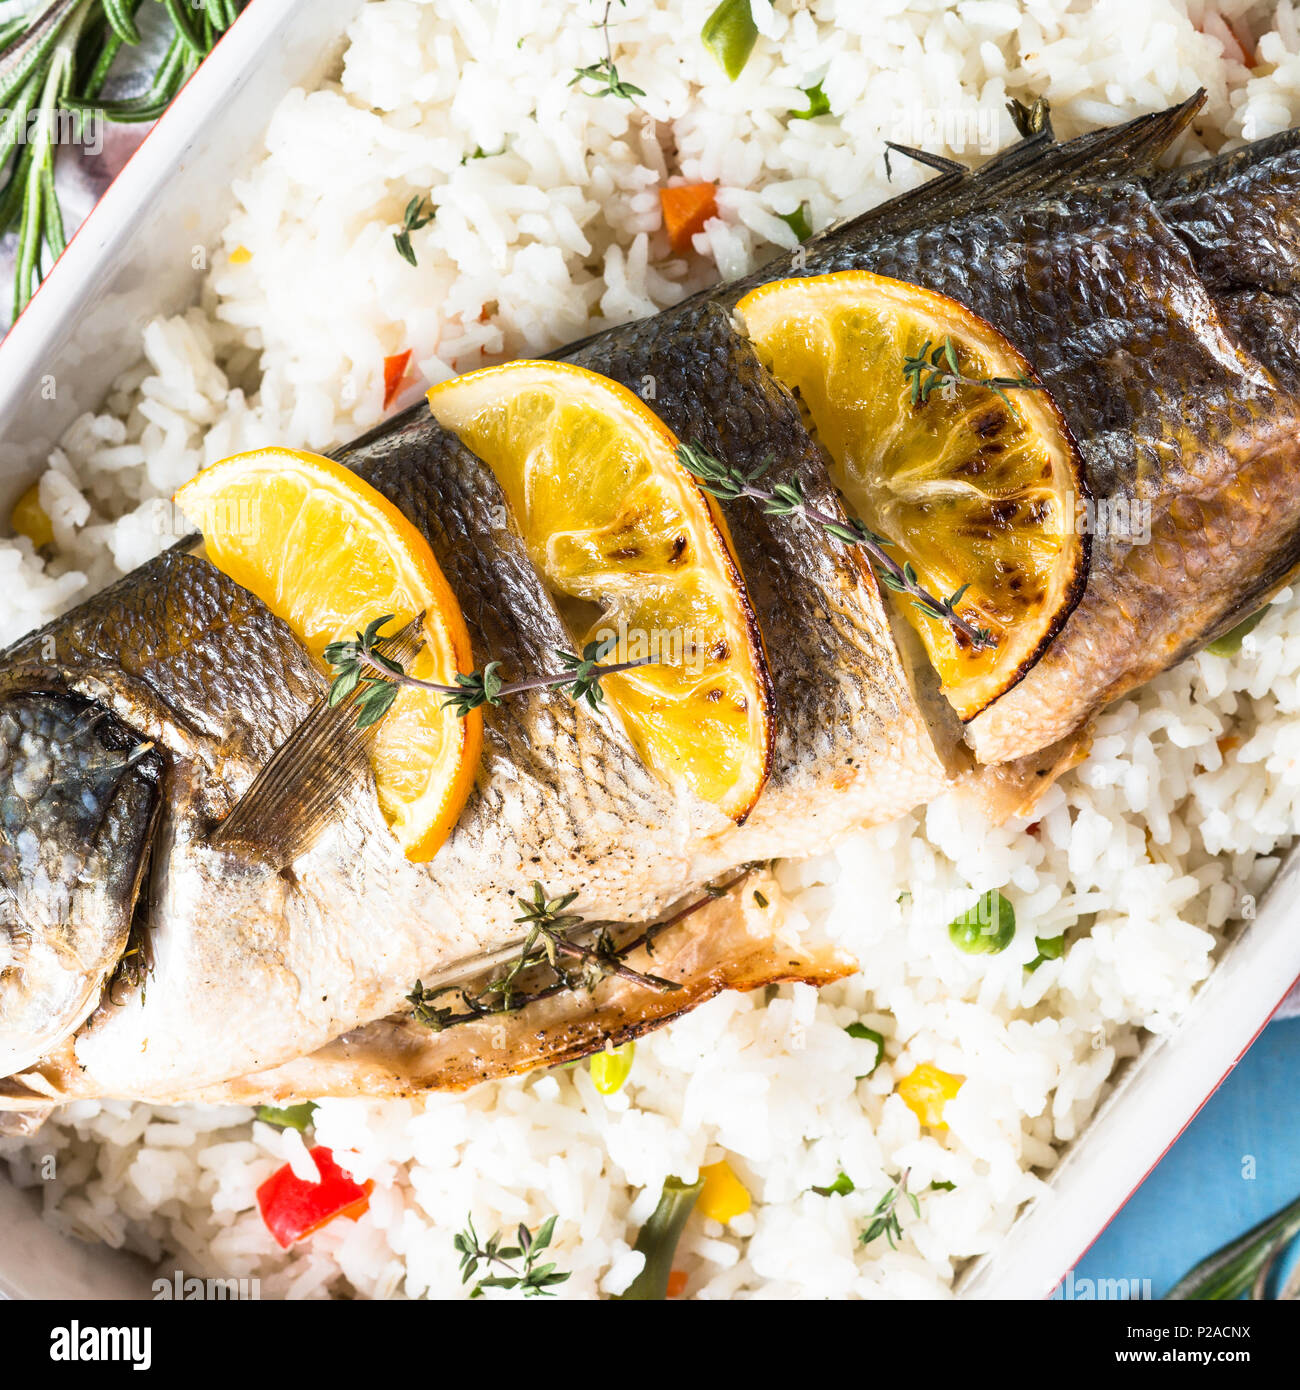 Wolfsbarsch Fisch gebacken mit Reis und Gemüse Stockfotografie - Alamy